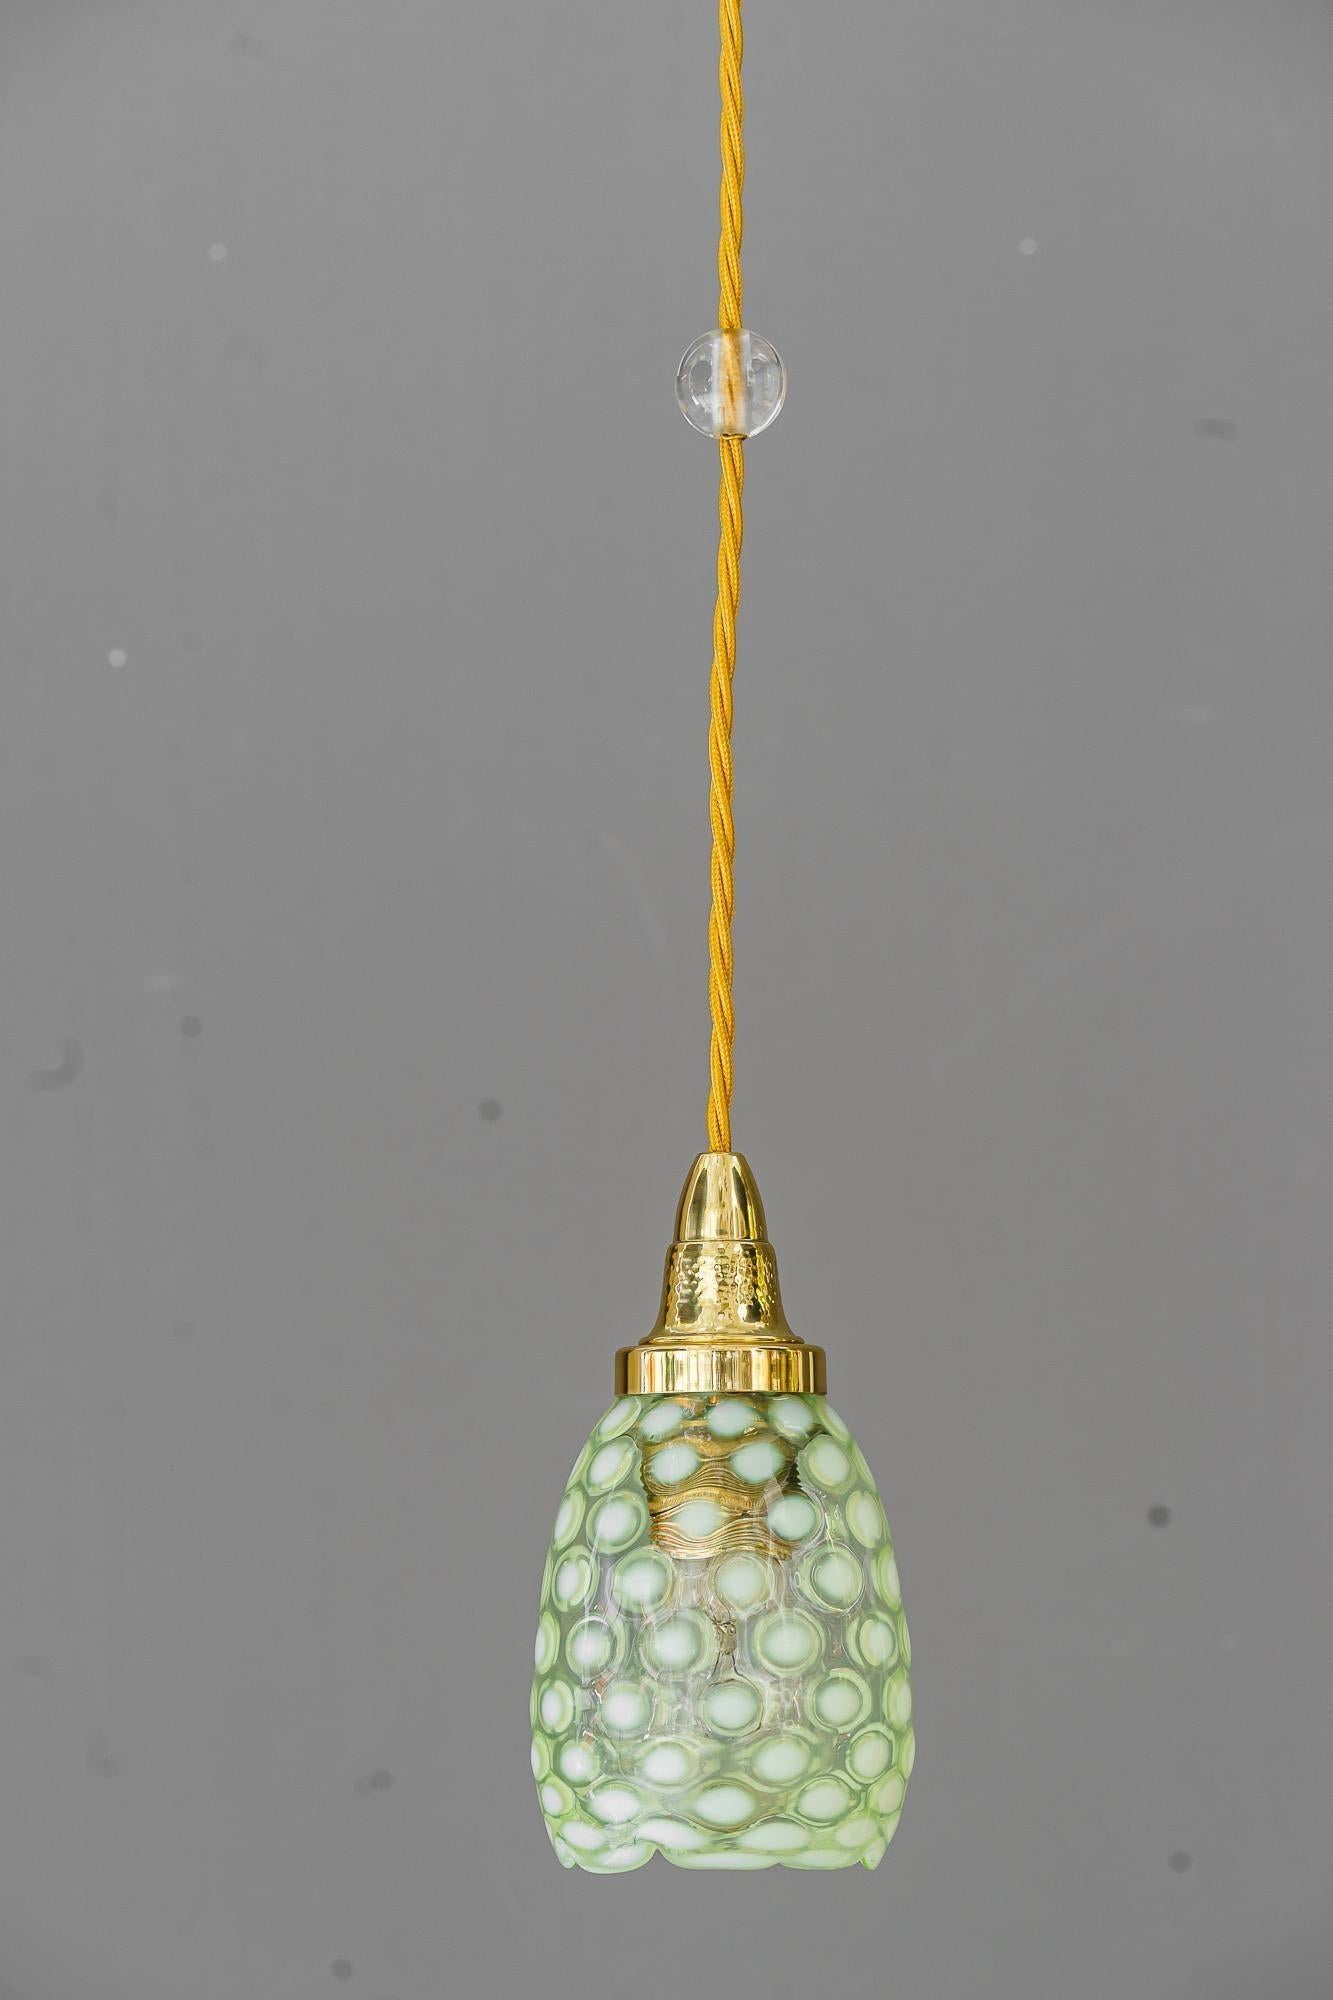 Art deco Hängeleuchte mit original antikem Opalglasschirm wien um 1920
Messing poliert und emailliert
Wir können die Höhe der Lampe an die Höhe Ihres Zimmers anpassen
